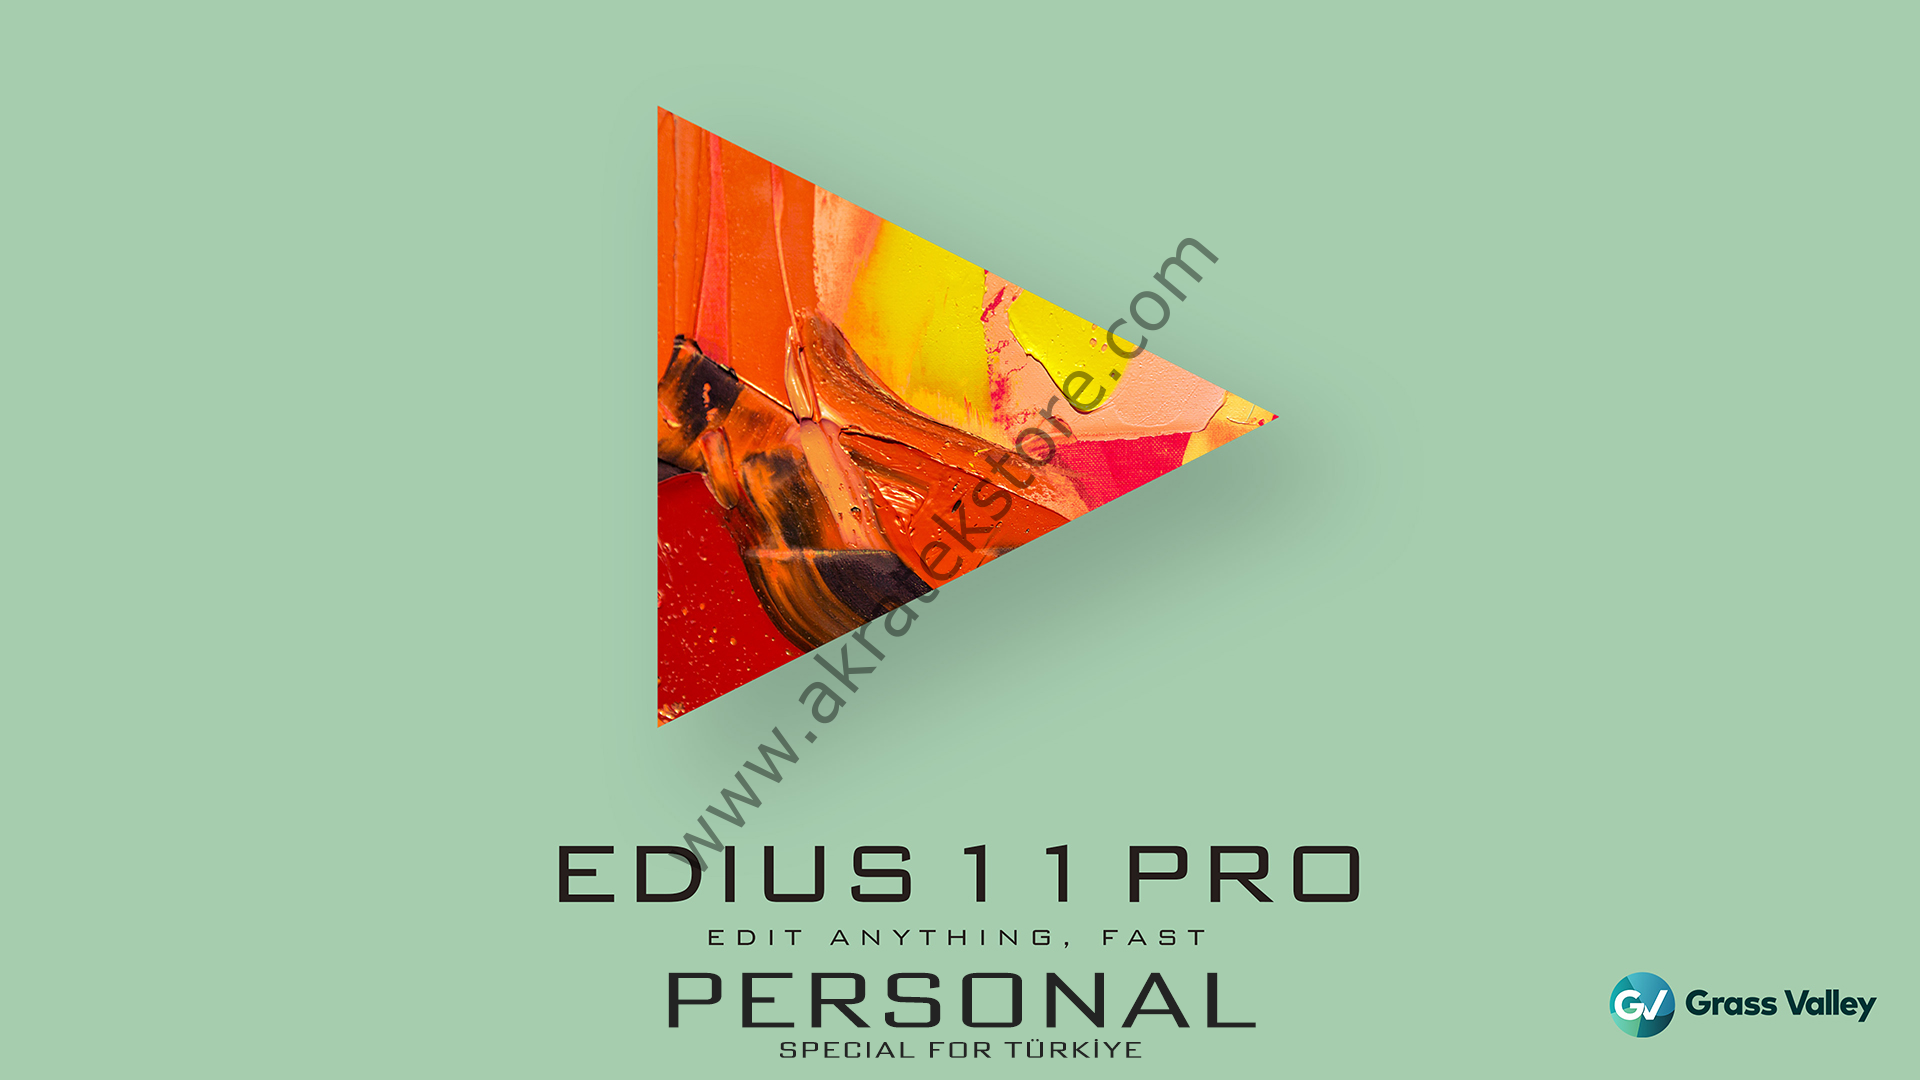 EDIUS 11 PRO PERSONAL